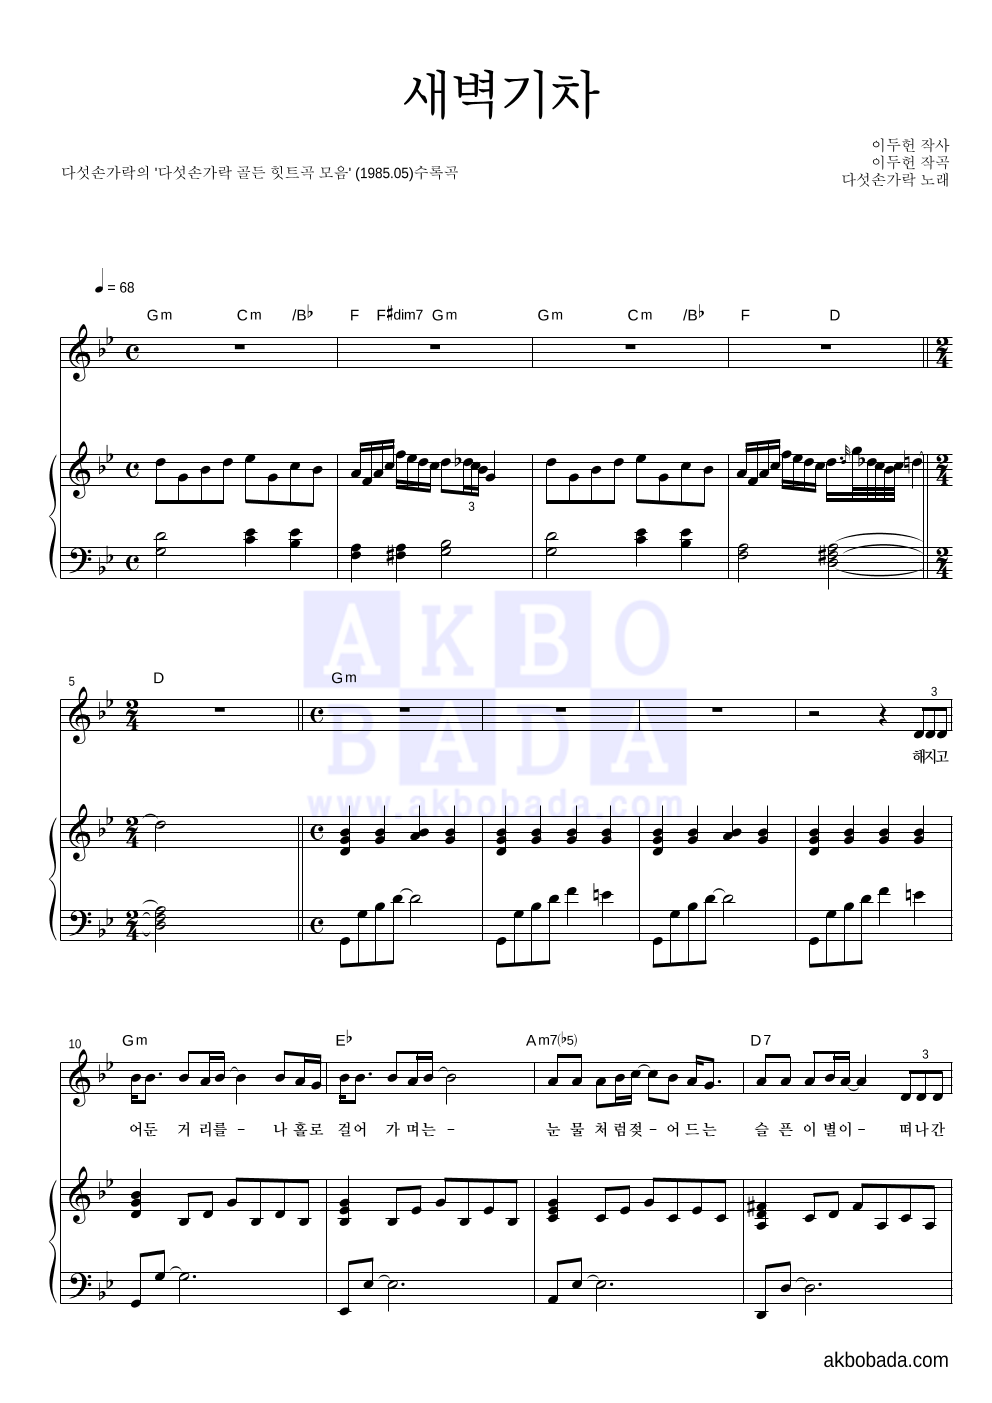 다섯손가락 - 새벽기차 (골든 힛트곡 Ver.) 피아노 3단 악보 